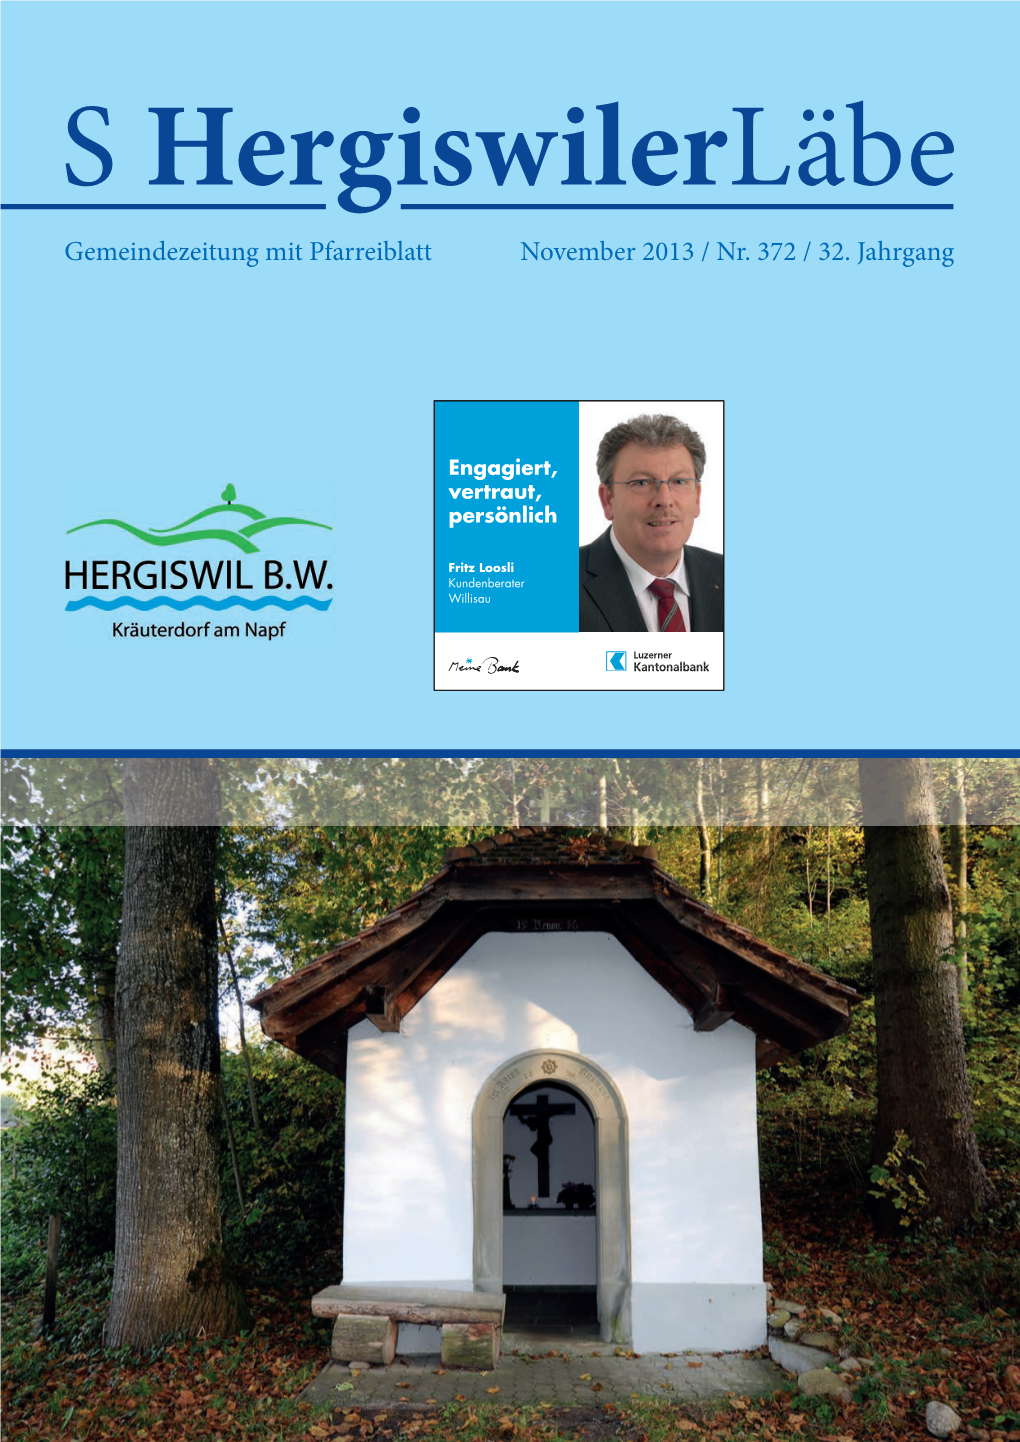 Gemeindezeitung Mit Pfarreiblatt November 2013 / Nr. 372 / 32